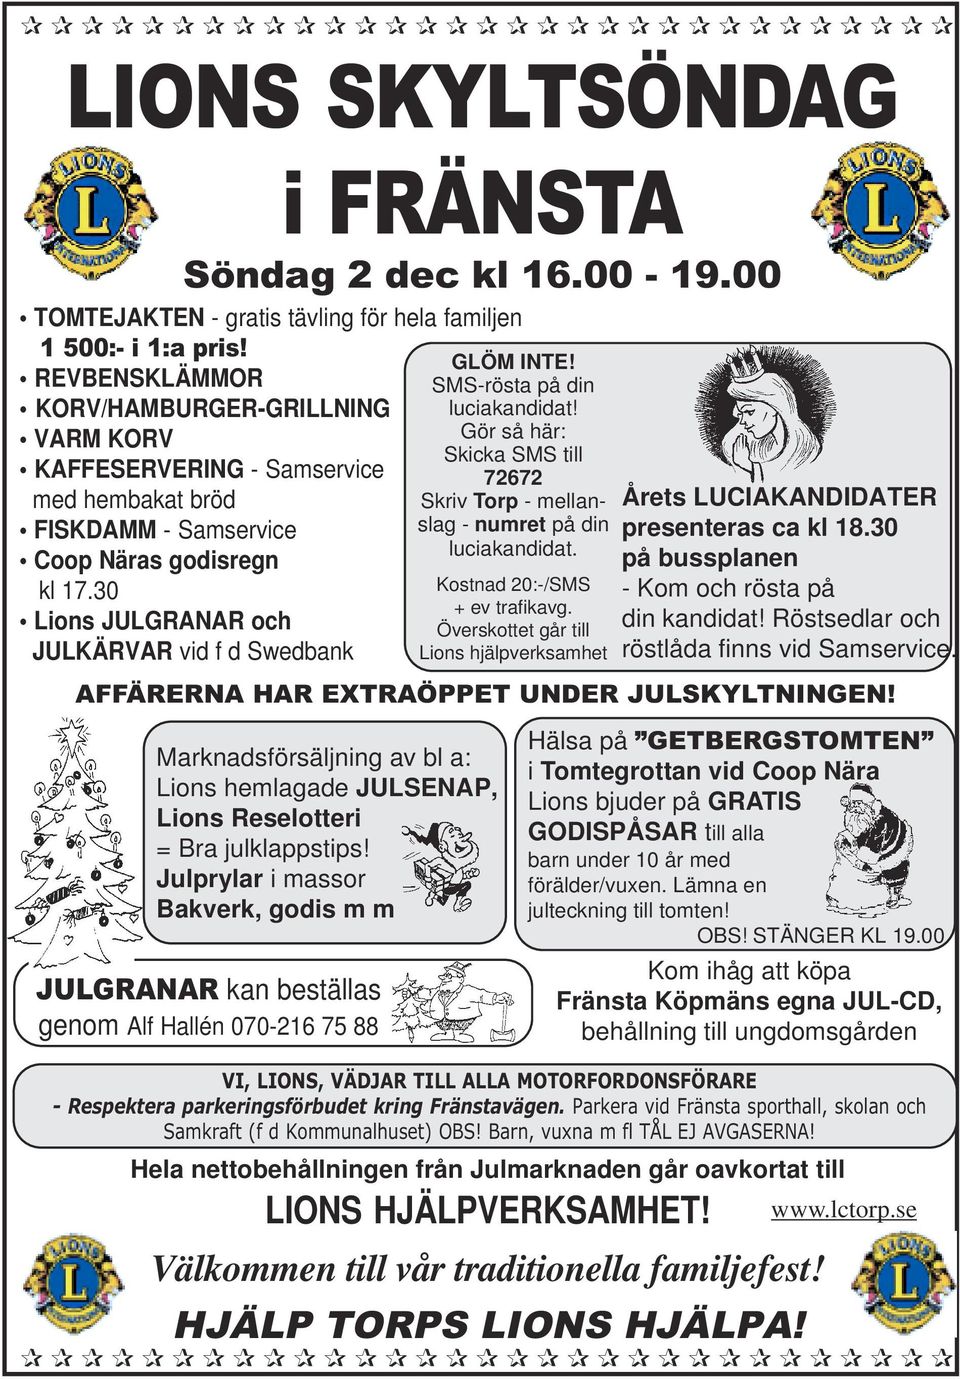 30 Lions JULGRANAR och JULKÄRVAR vid f d Swedbank JULGRANAR kan beställas genom Alf Hallén 070-216 75 88 i FRÄNSTA Söndag 2 dec kl 16.00-19.